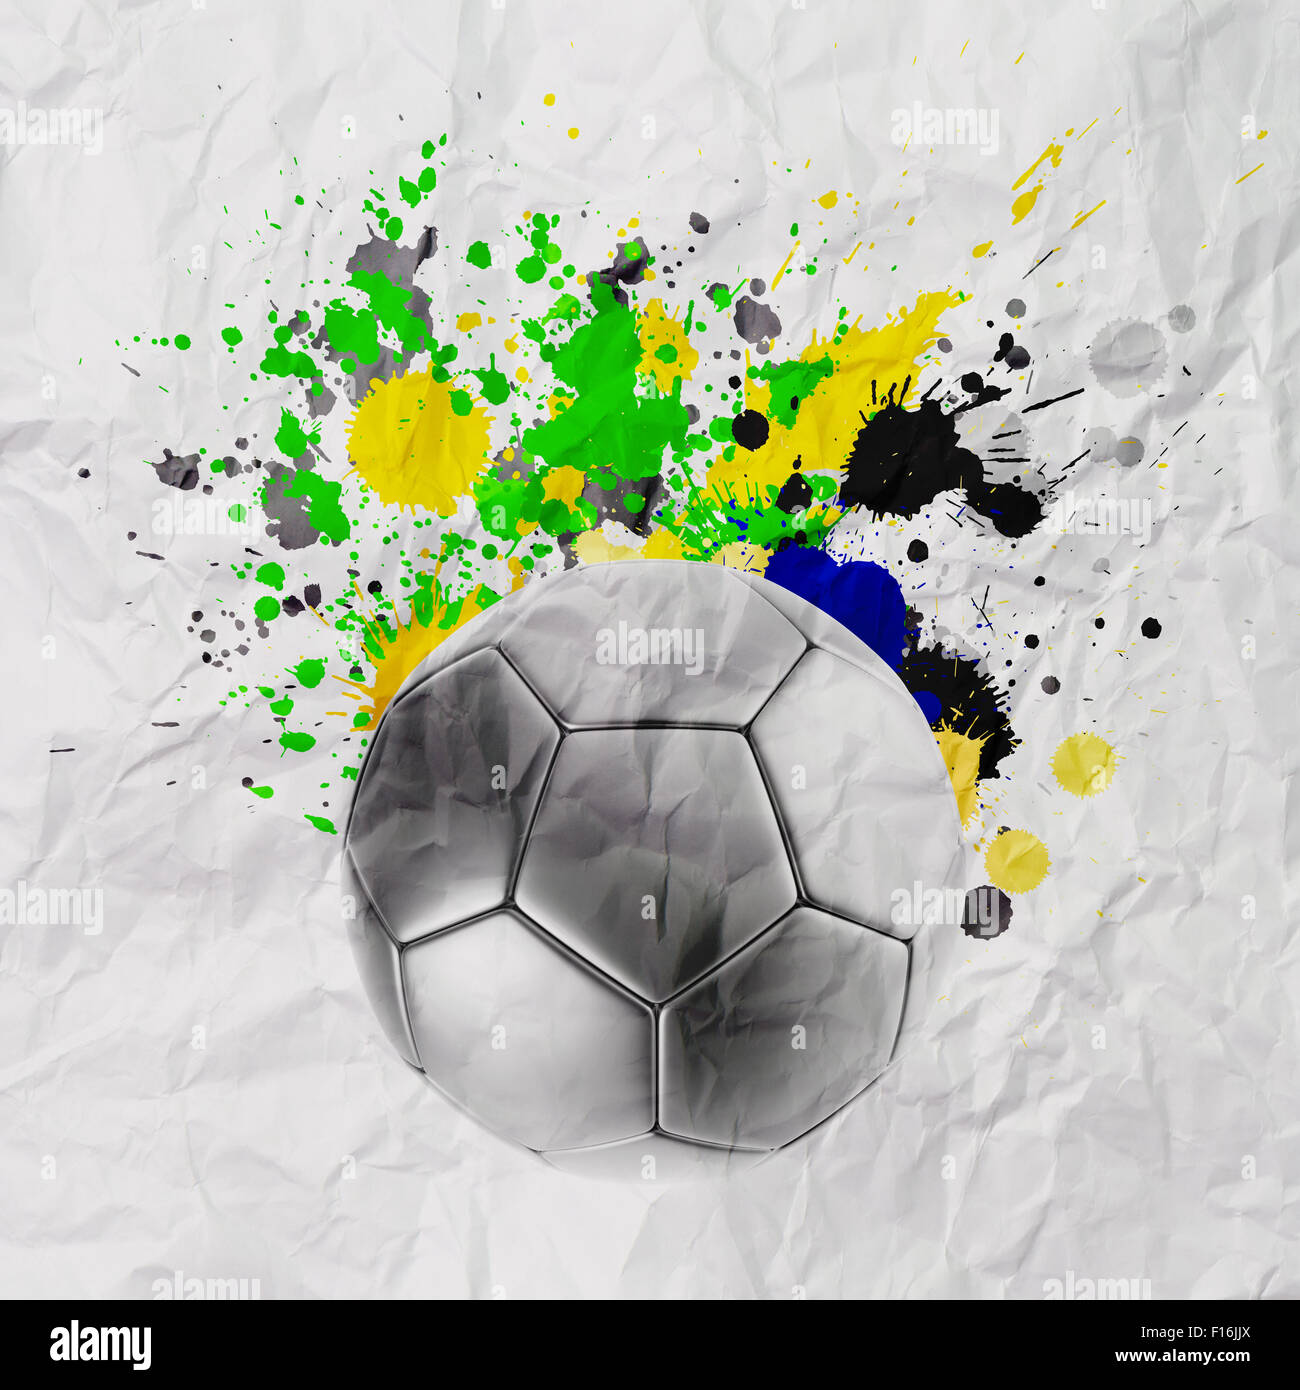 Ballon de soccer avec drapeau brésilien des éclaboussures de couleurs sur fond de papier froissé Banque D'Images